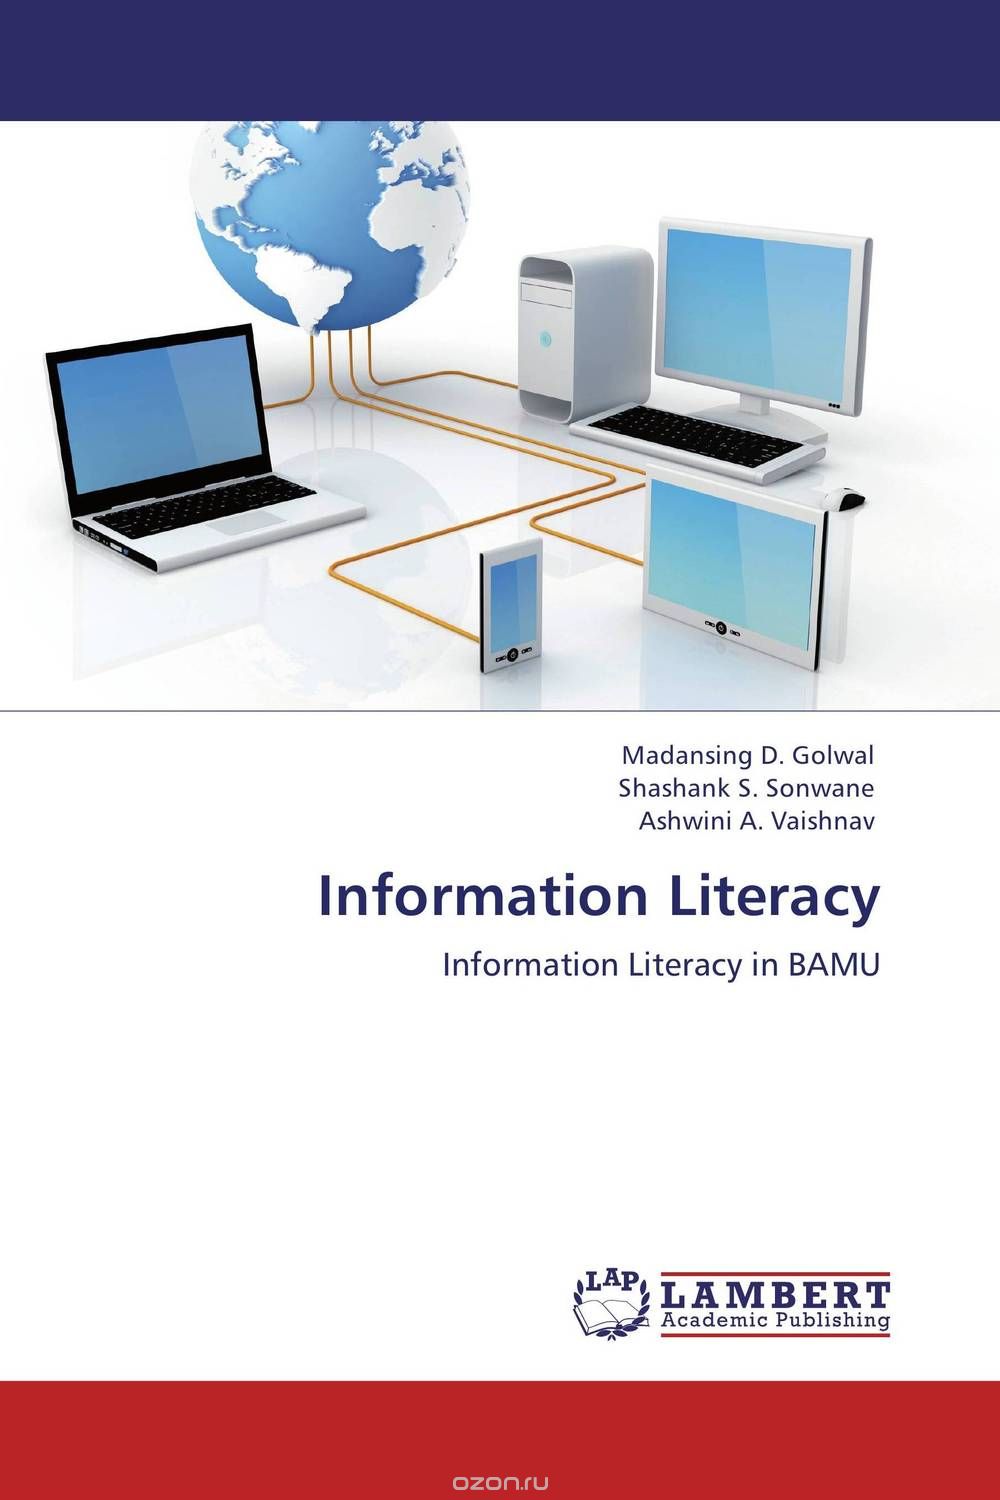 Скачать книгу "Information Literacy"